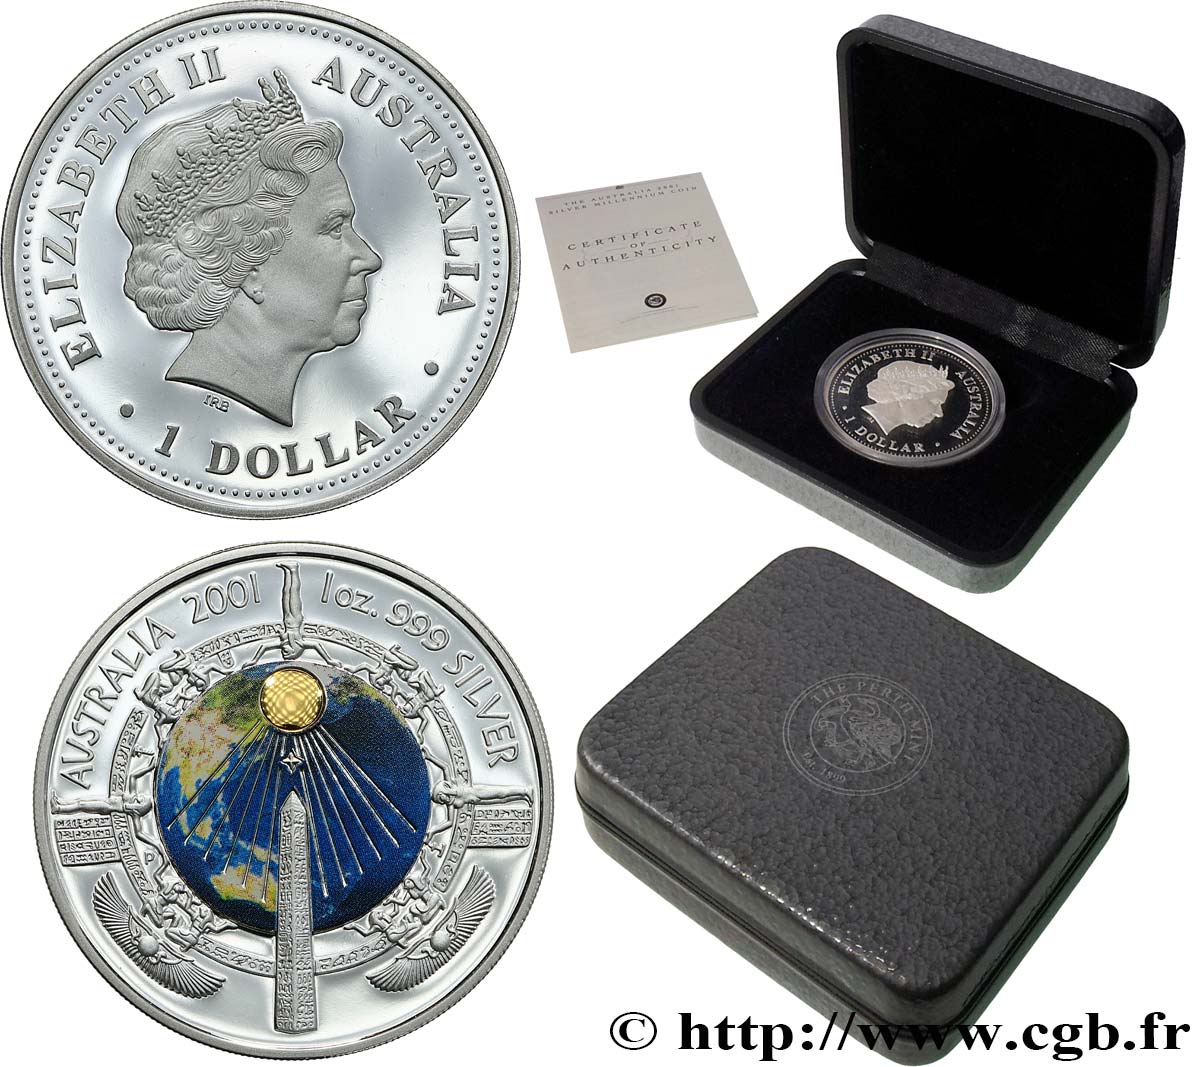 AUSTRALIA 1 Dollar Proof “Millenium coin” 2001  Proof set 